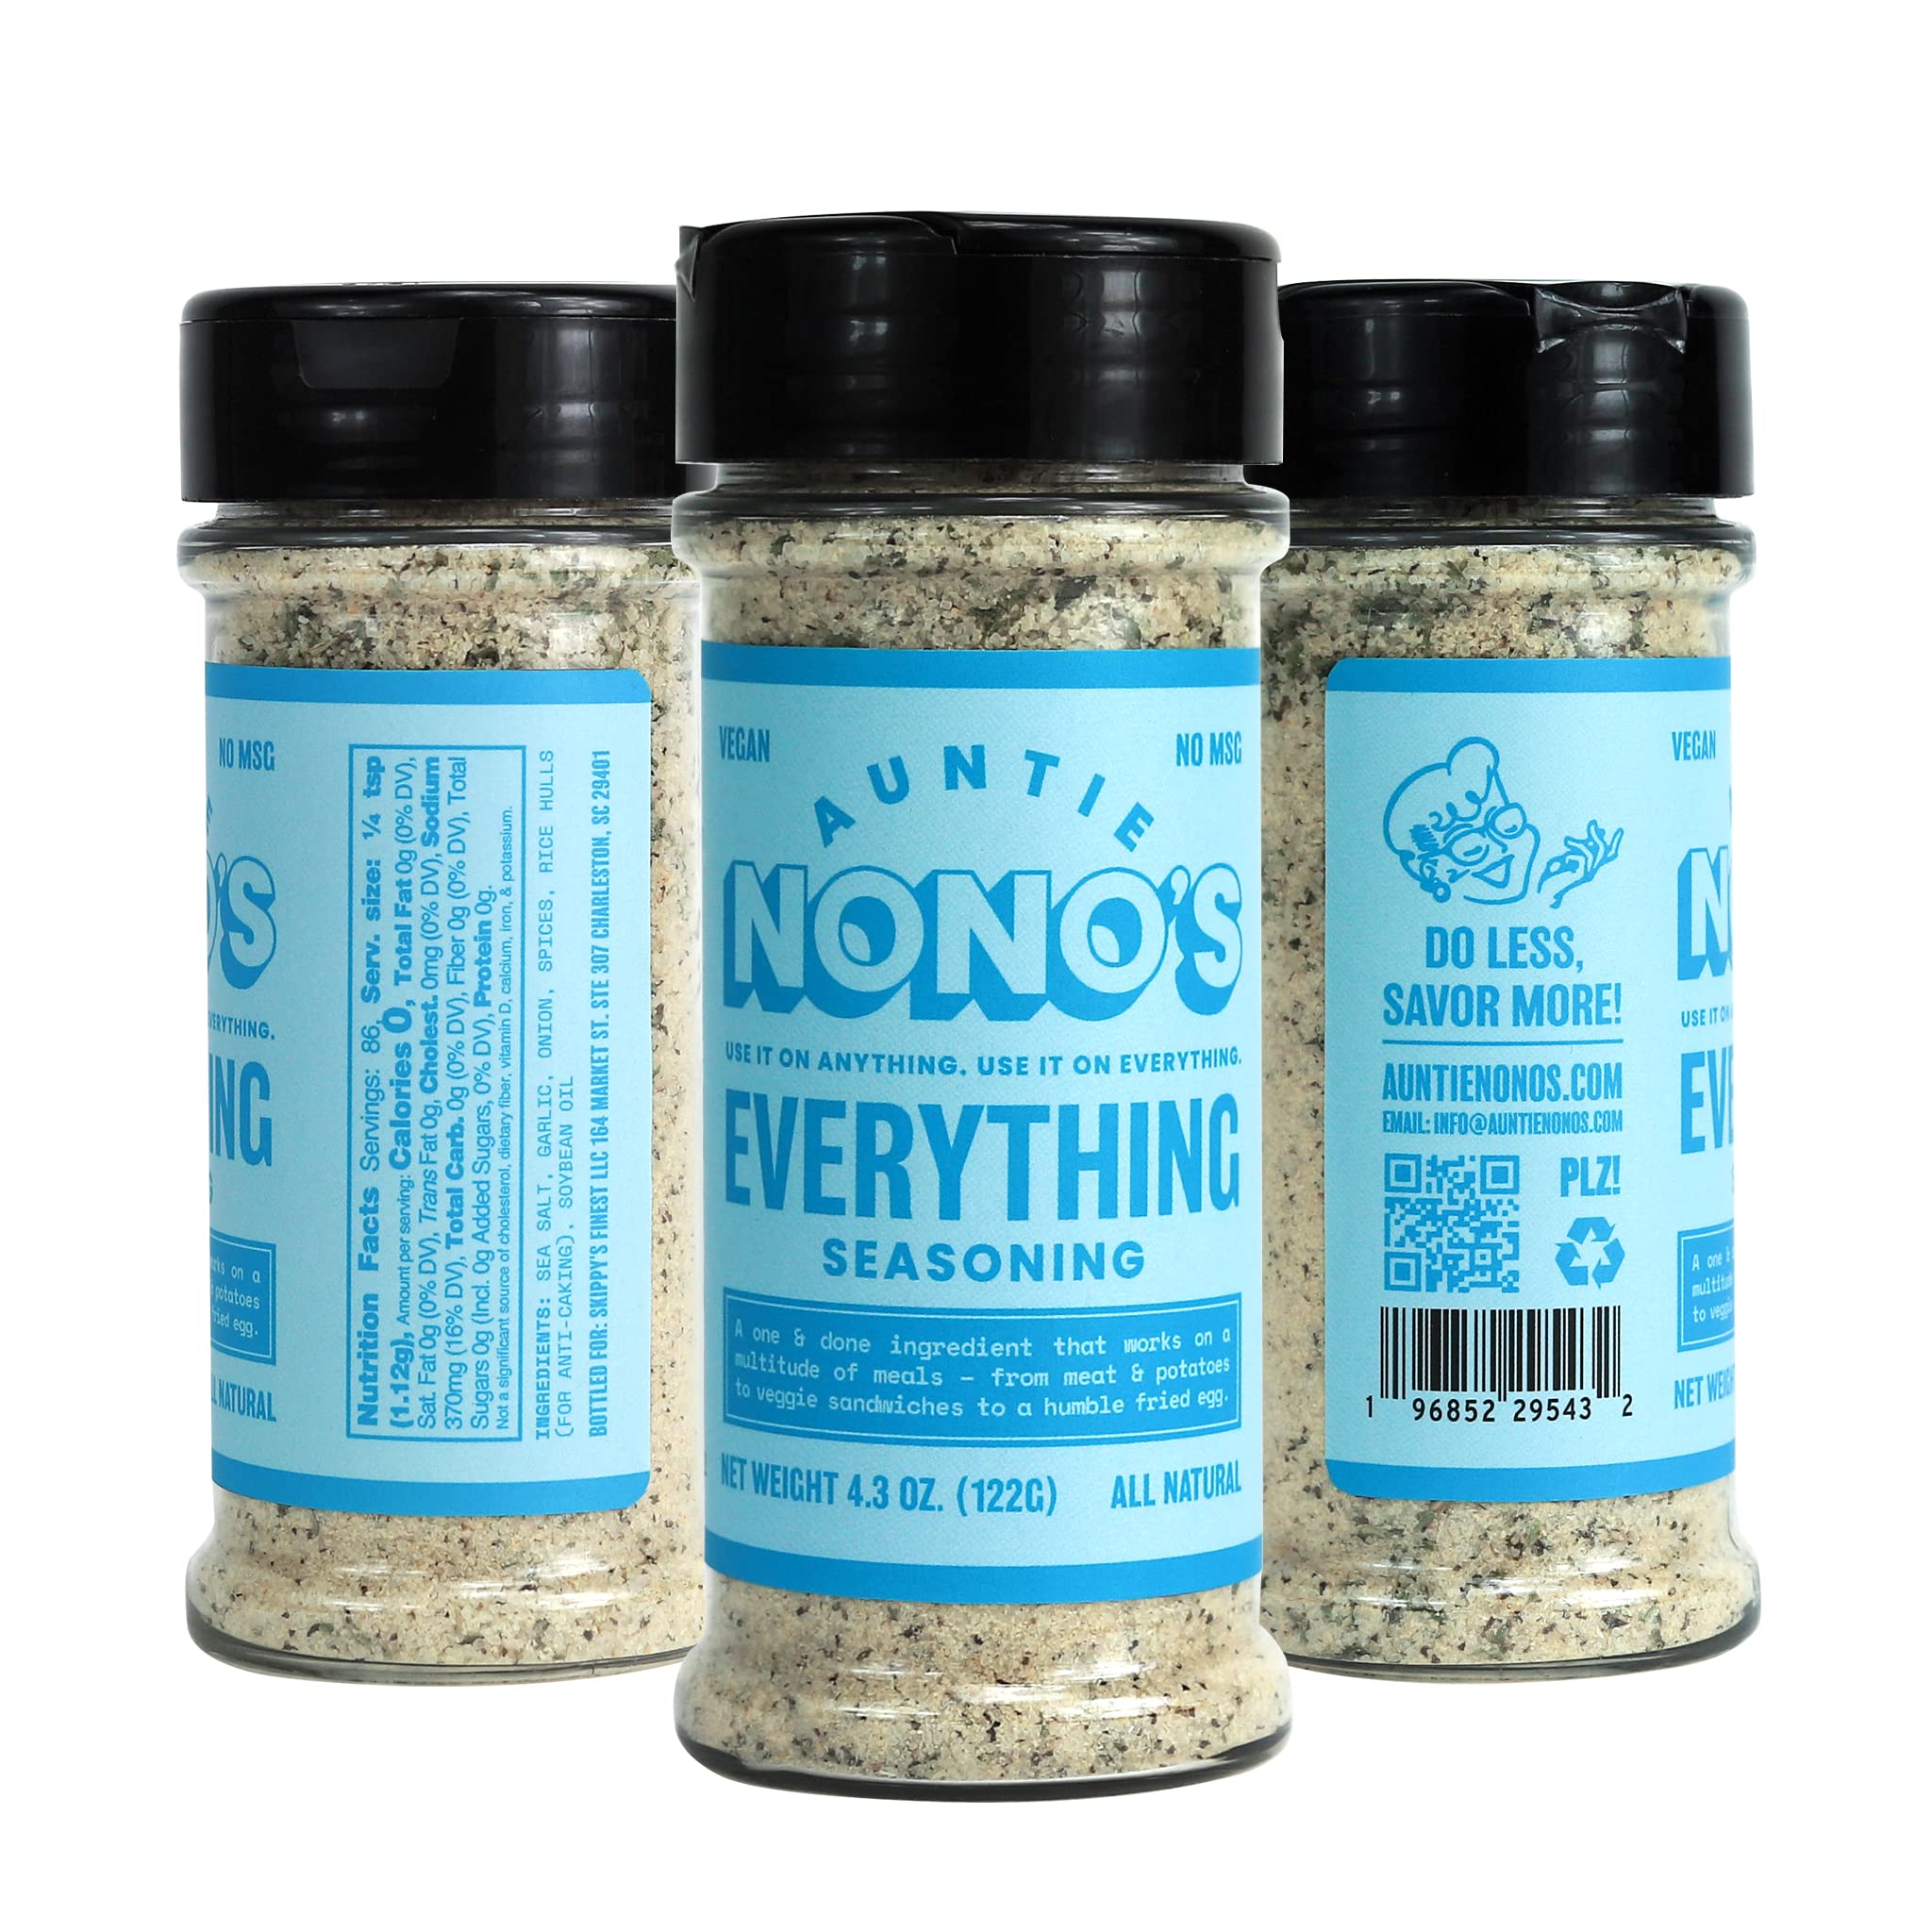  Auntie Nono's Everything Seasoning - Sea Salt, Garlic, & Onion  Powder - Add Flavor to Chicken, Pork Chops, Eggs & Veggies - Paleo, Vegan,  & Gluten-Free Friendly : Grocery & Gourmet Food